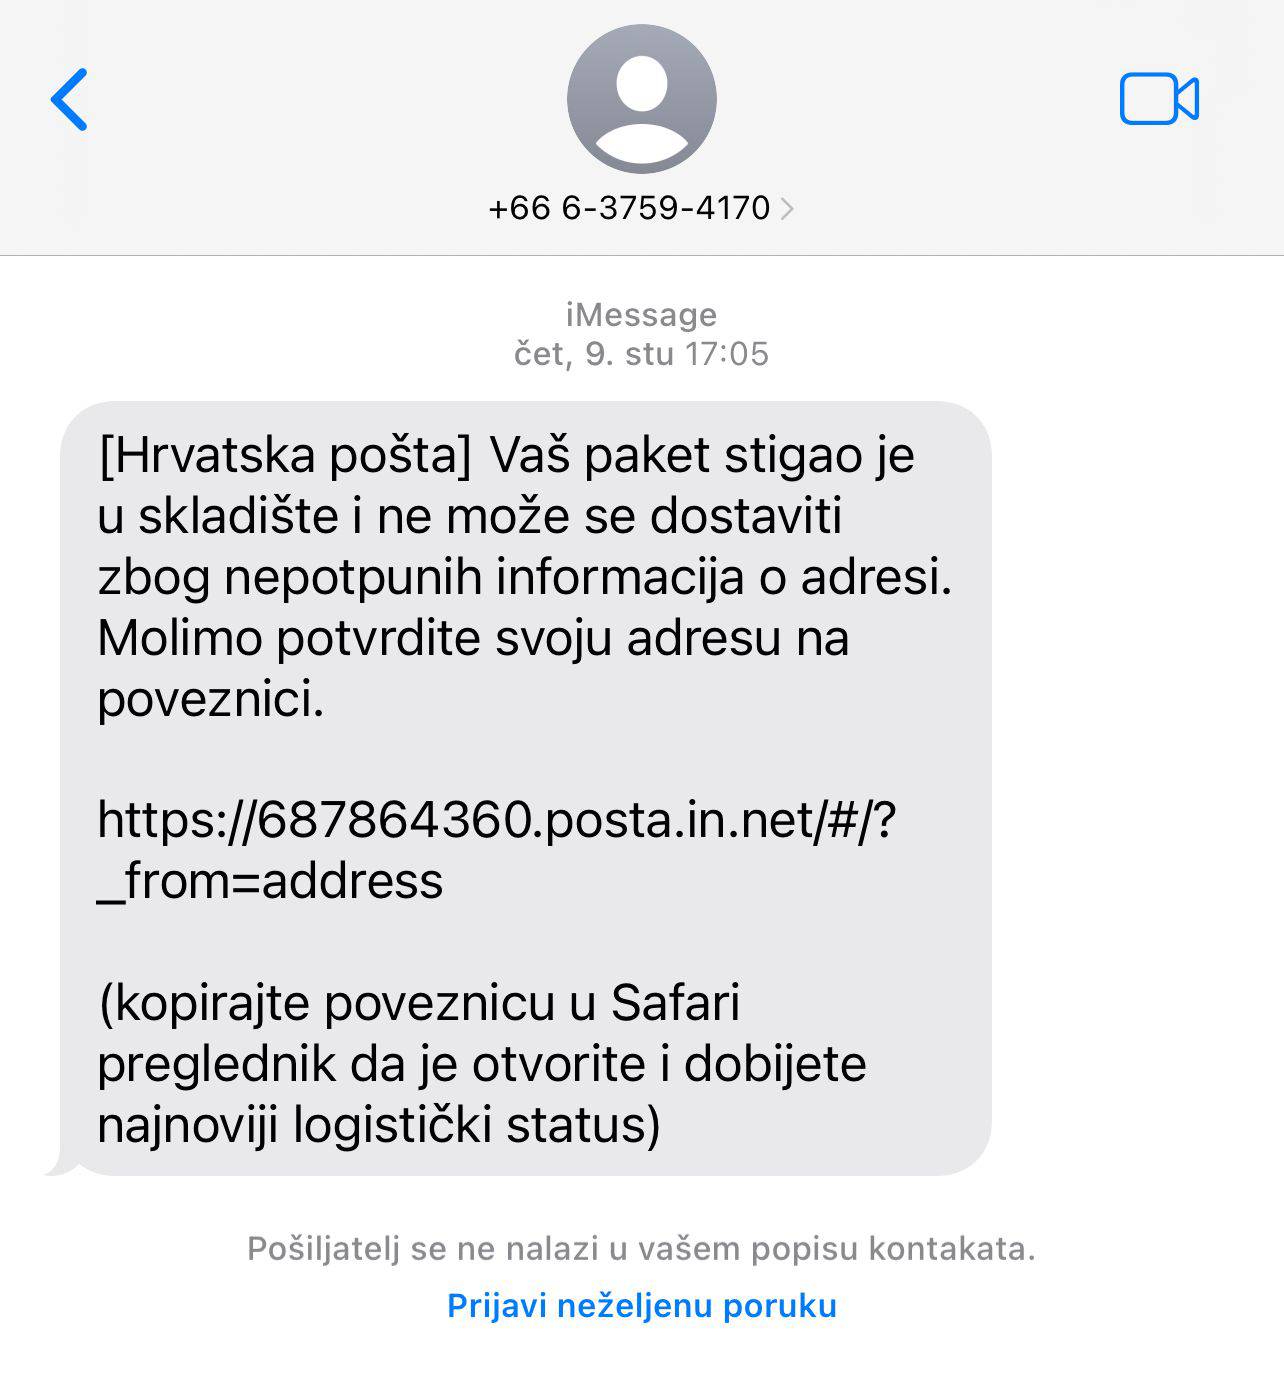 Opet kruže poruke o paketima iz Hrvatske pošte koji još nisu preuzeti. Policija: To je lažno!